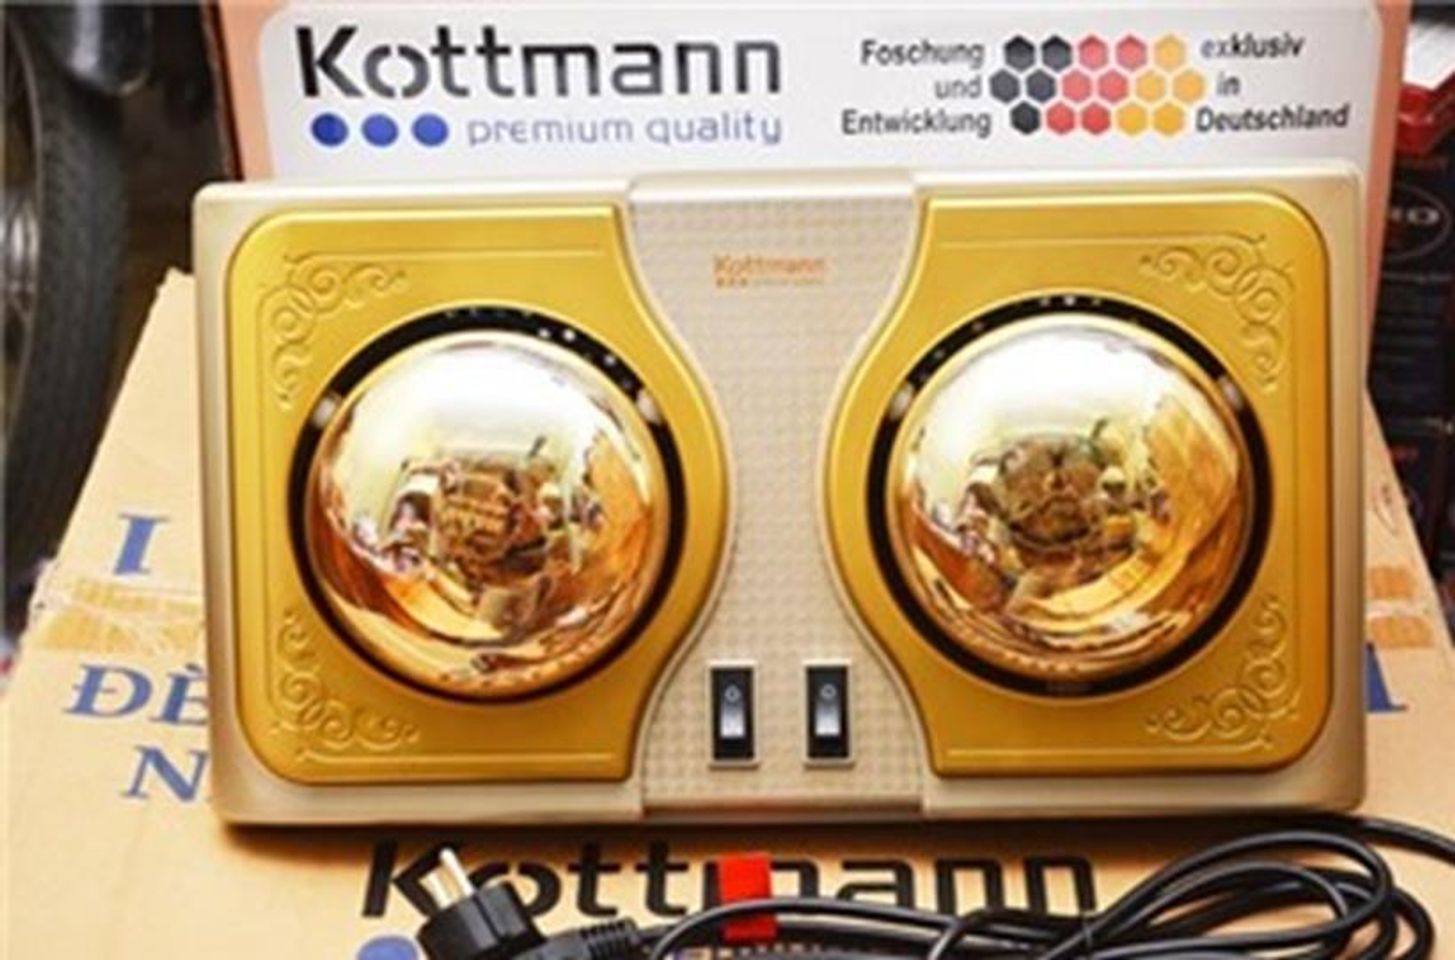 Đèn sưởi Kottmann 2 bóng vàng K2B chính hãng, không chói mắt